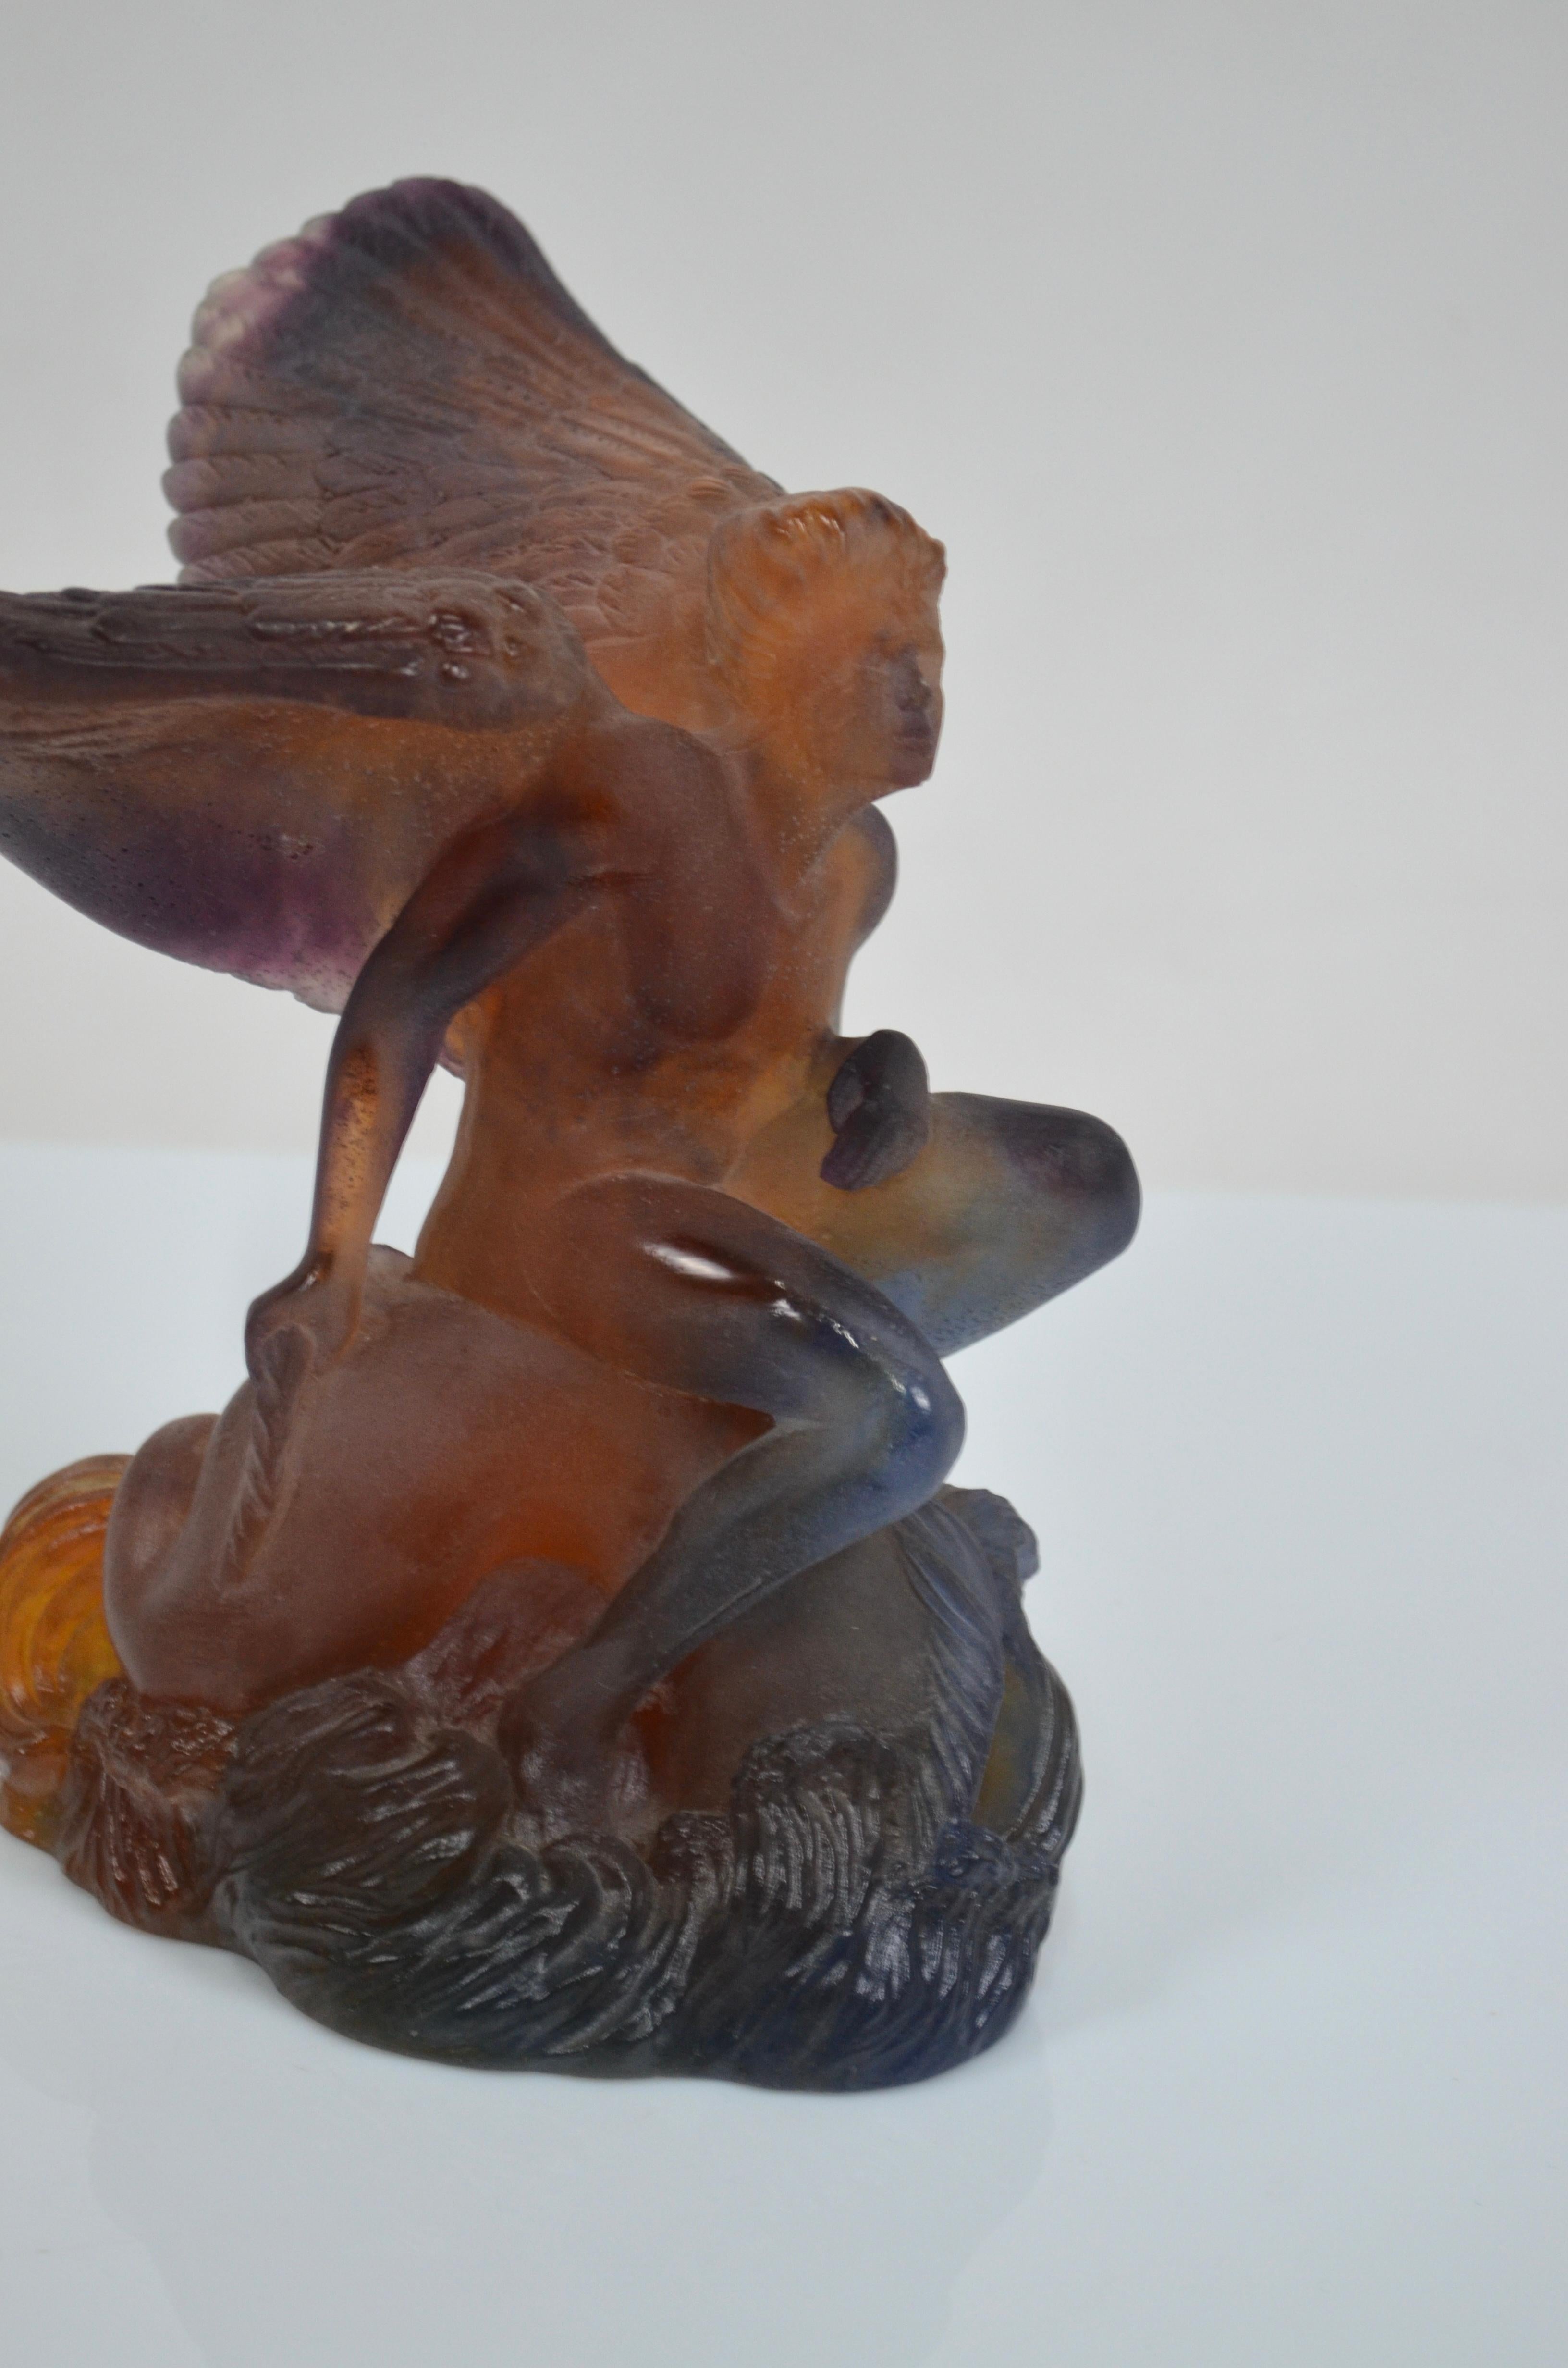 Magnifique coupe de Daum France, composée d'une sculpture en pâte de cristal représentant Icare qui soutient de ses ailes une superbe et grande coupe en cristal.
Couleur ambre, avec des reflets allant vers le violet ou le grenat.
L'œuvre est signée